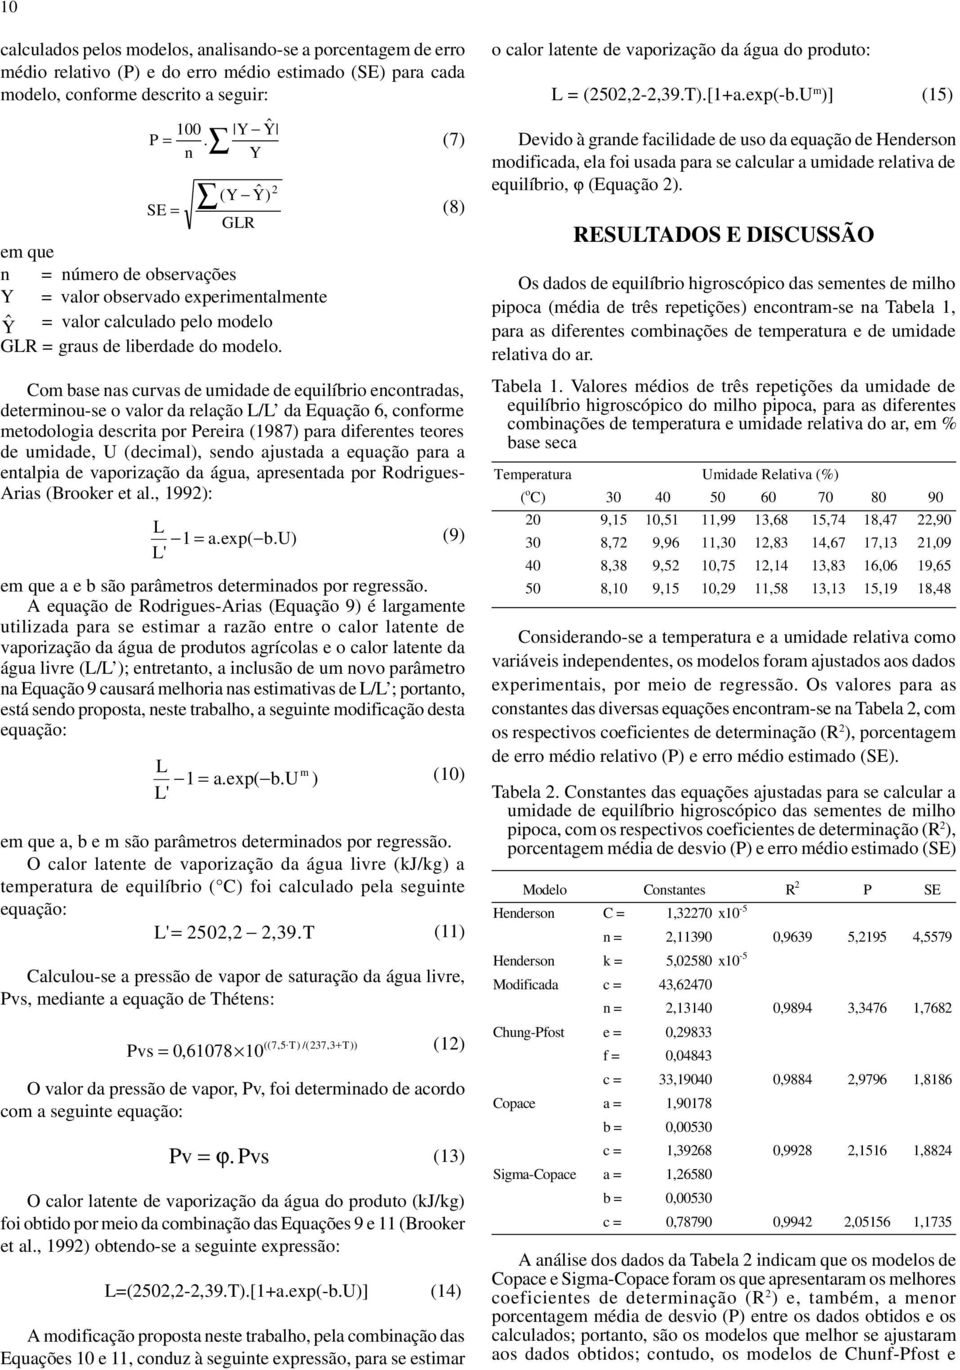 Com base nas curvas de umidade de equilíbrio encontradas, determinou-se o valor da relação / da Equação 6, conforme metodologia descrita por Pereira (1987) para diferentes teores de umidade, U